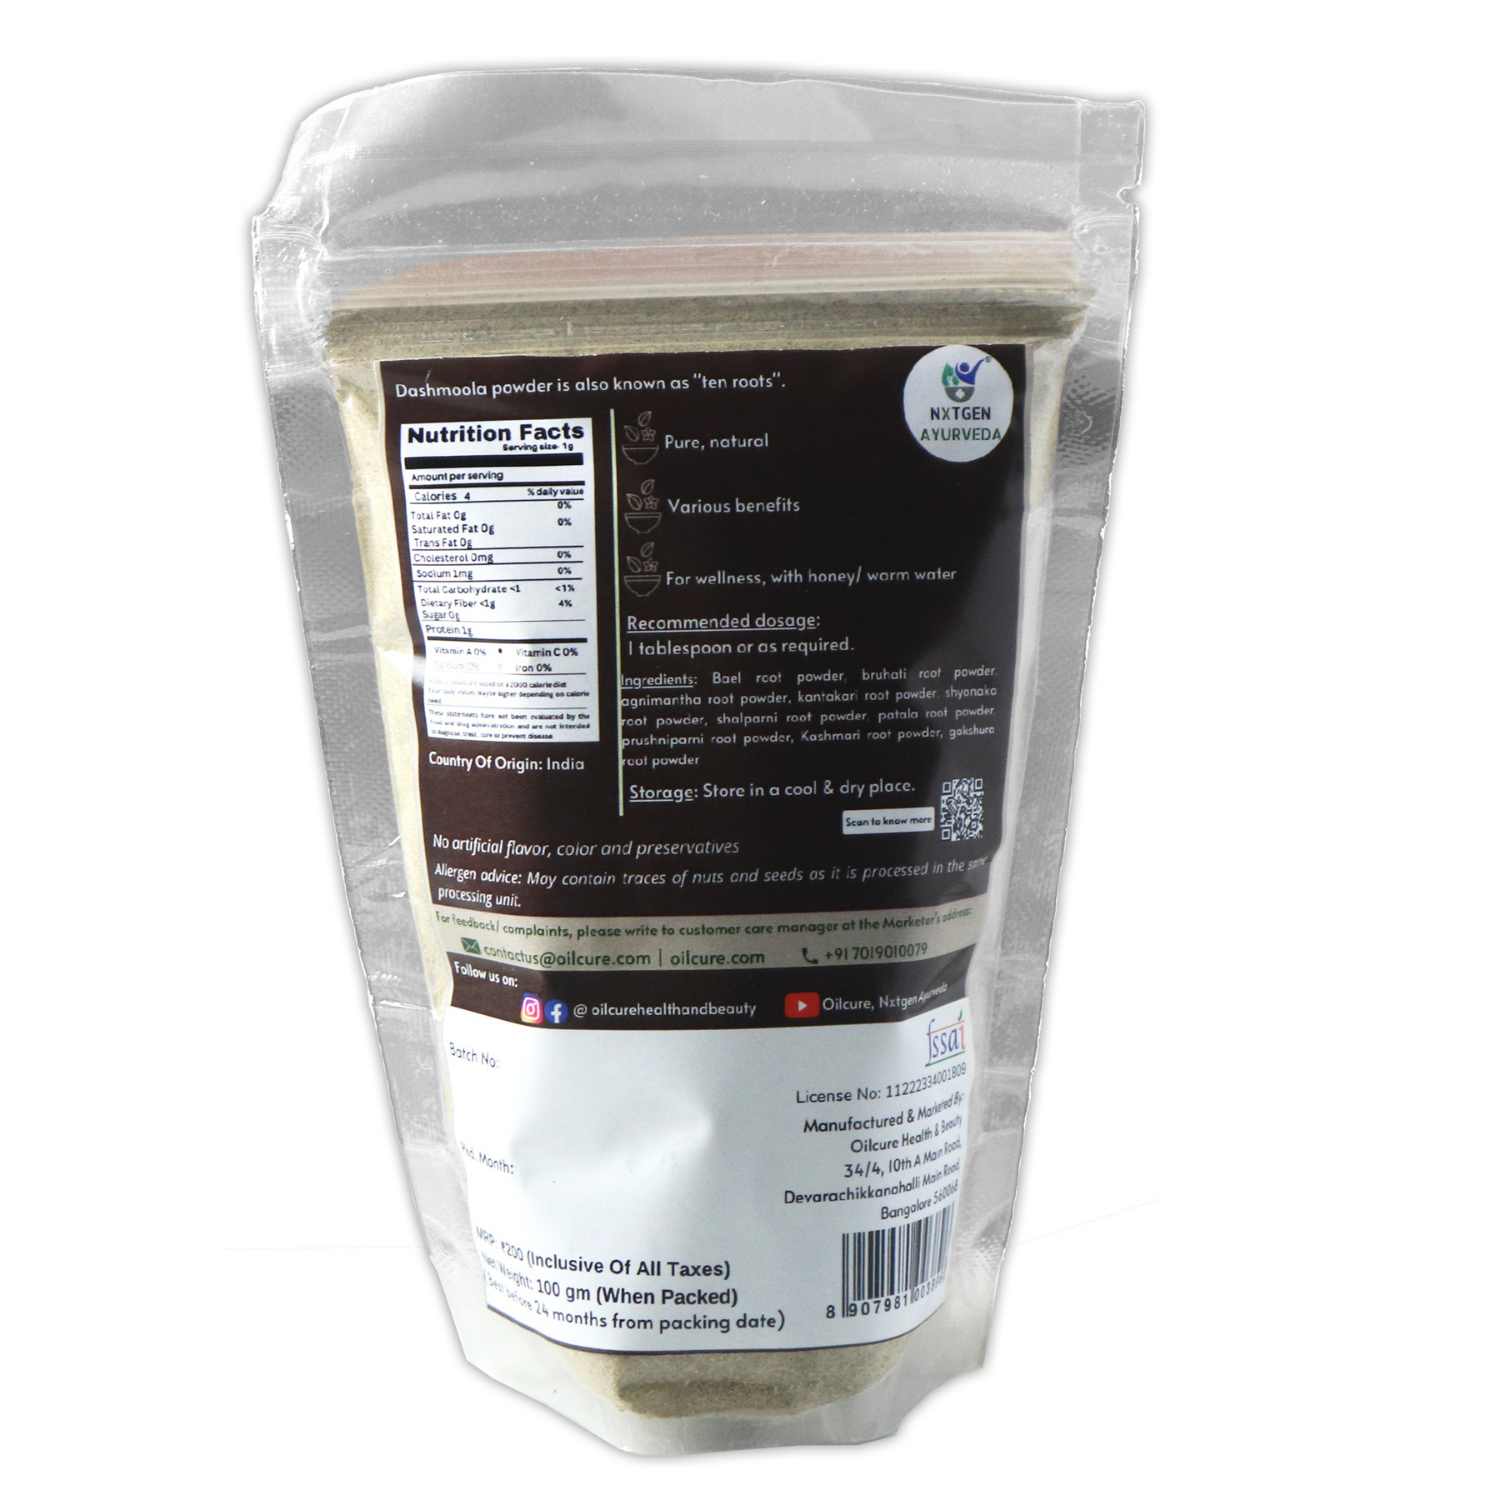 Nxtgen Ayurveda Dashmool Powder -100 gms (Pack of 2)